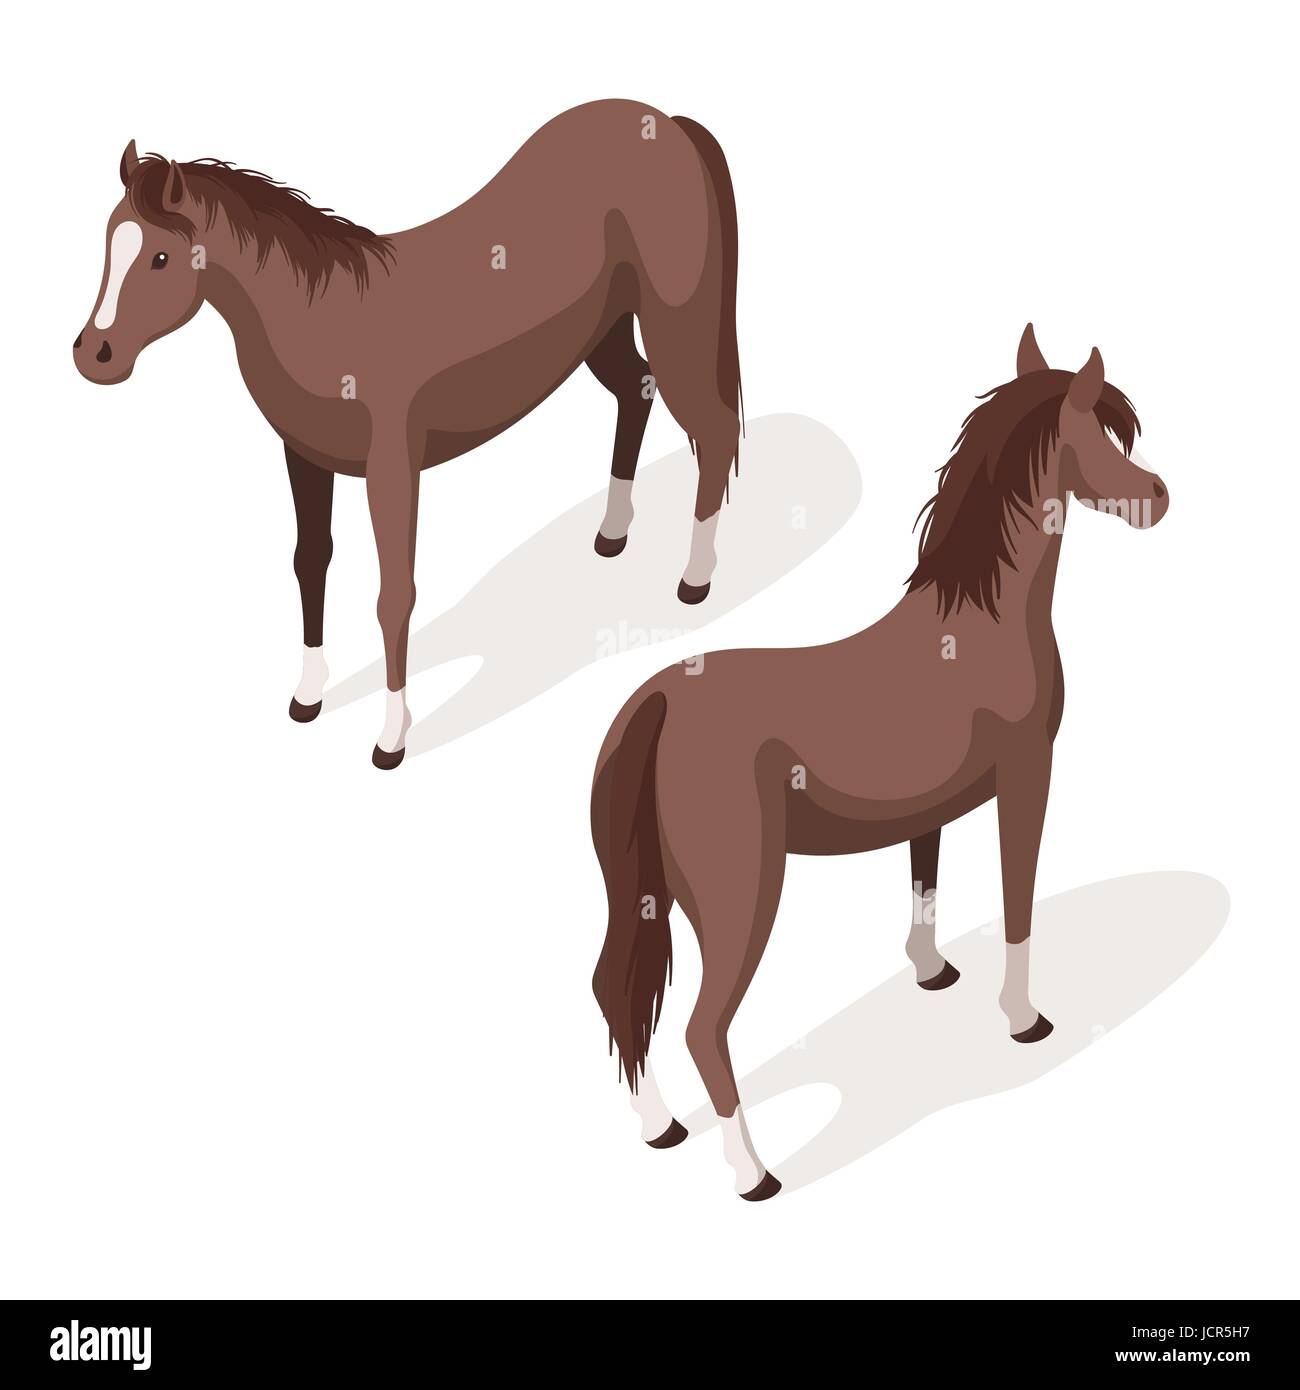 Isometrica, 3d illustrazione vettoriale di marrone sorrel cavalli. Indietro e in vista frontale. Icona per il web. Isolato su sfondo bianco. Illustrazione Vettoriale